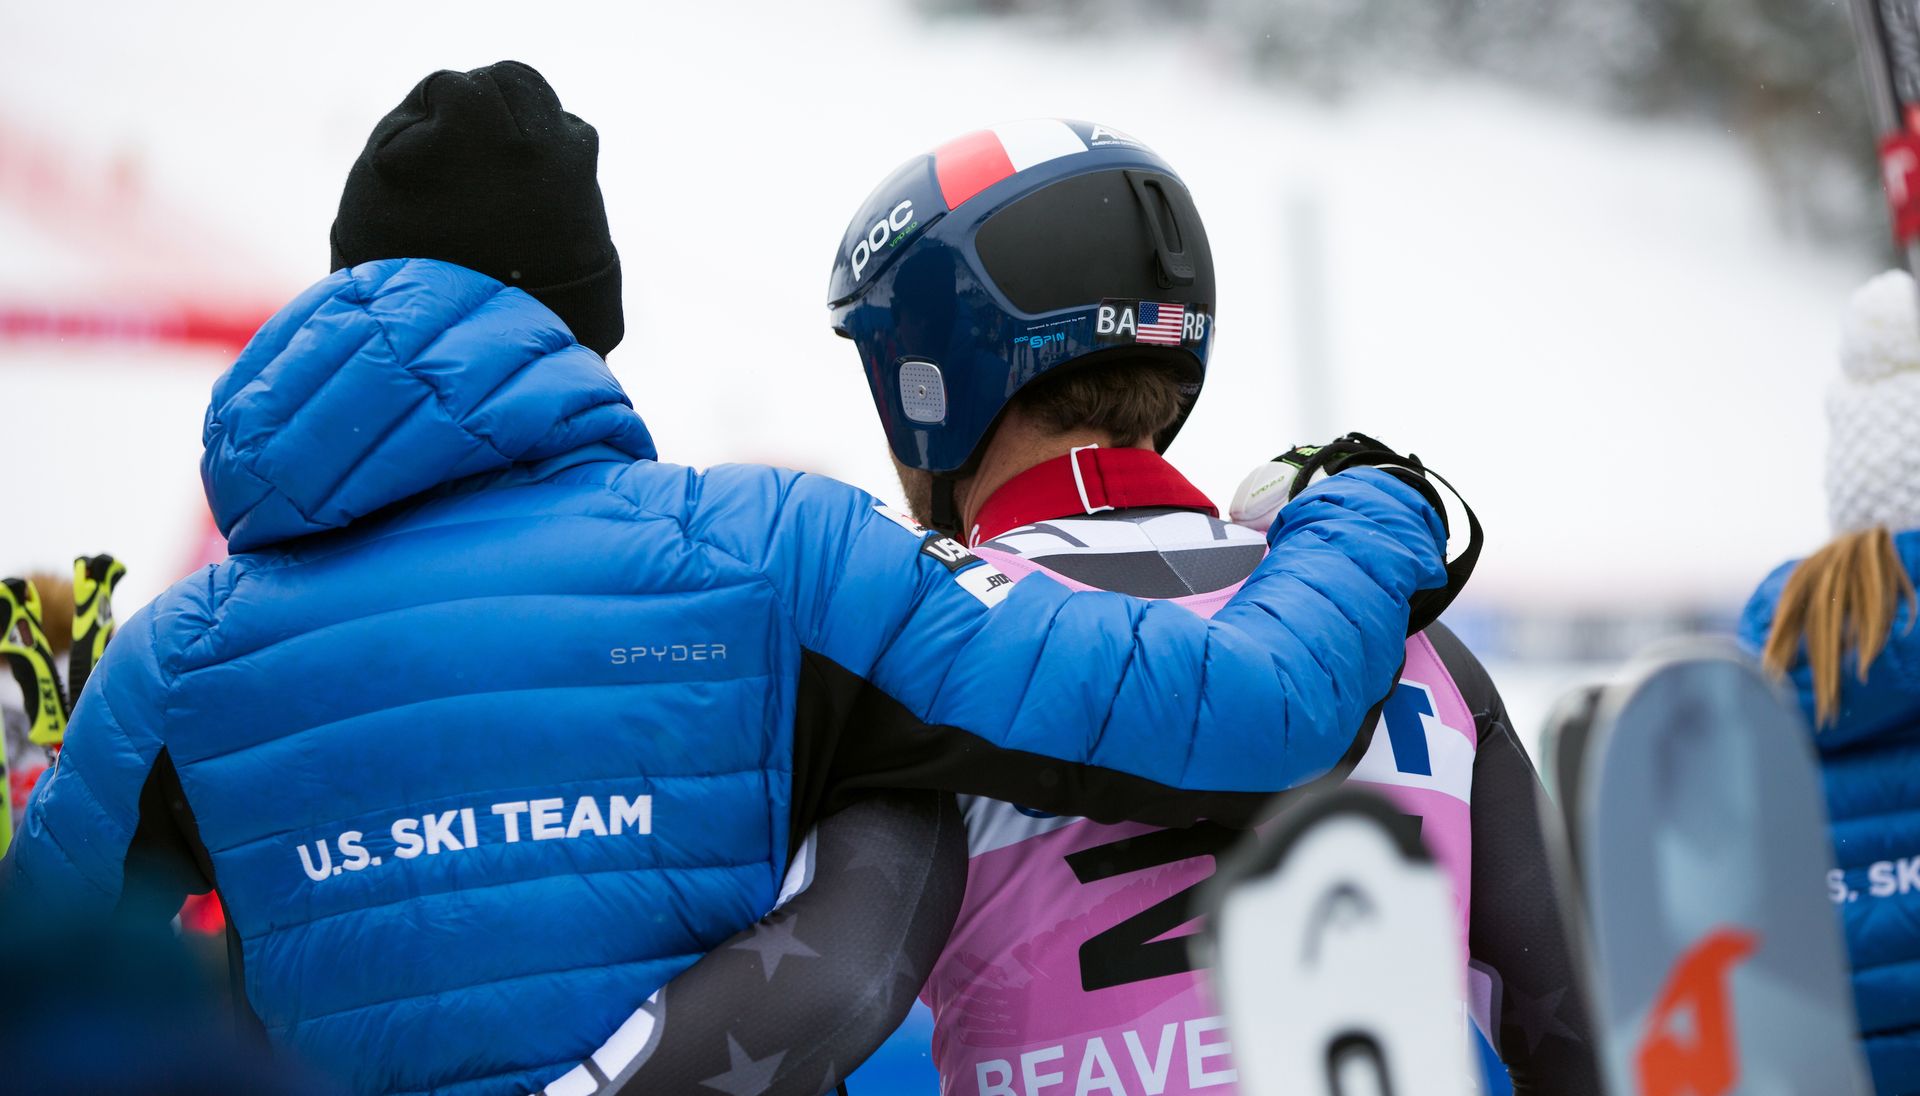 deja al U.S. Ski Team después de 33 años de patrocinio